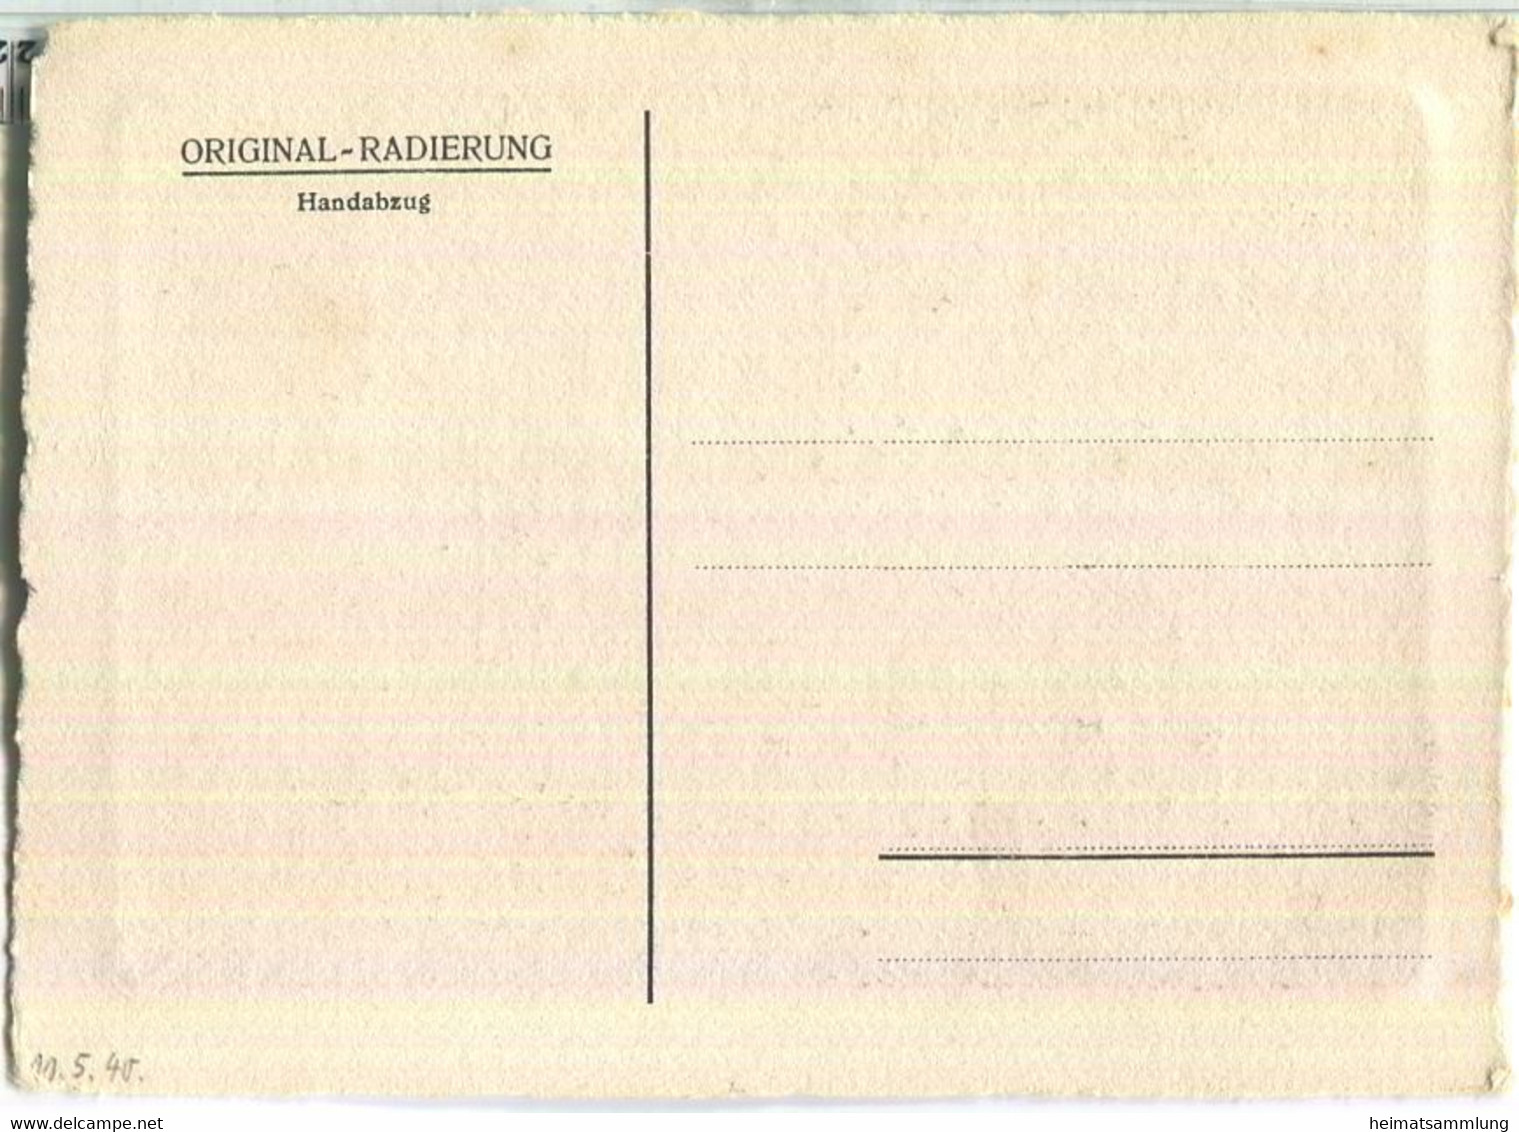 Berlin-Rixdorf - Radierung - Beetsaal Ca. 1940 - Original-Radierung - Handabzug - Neukoelln